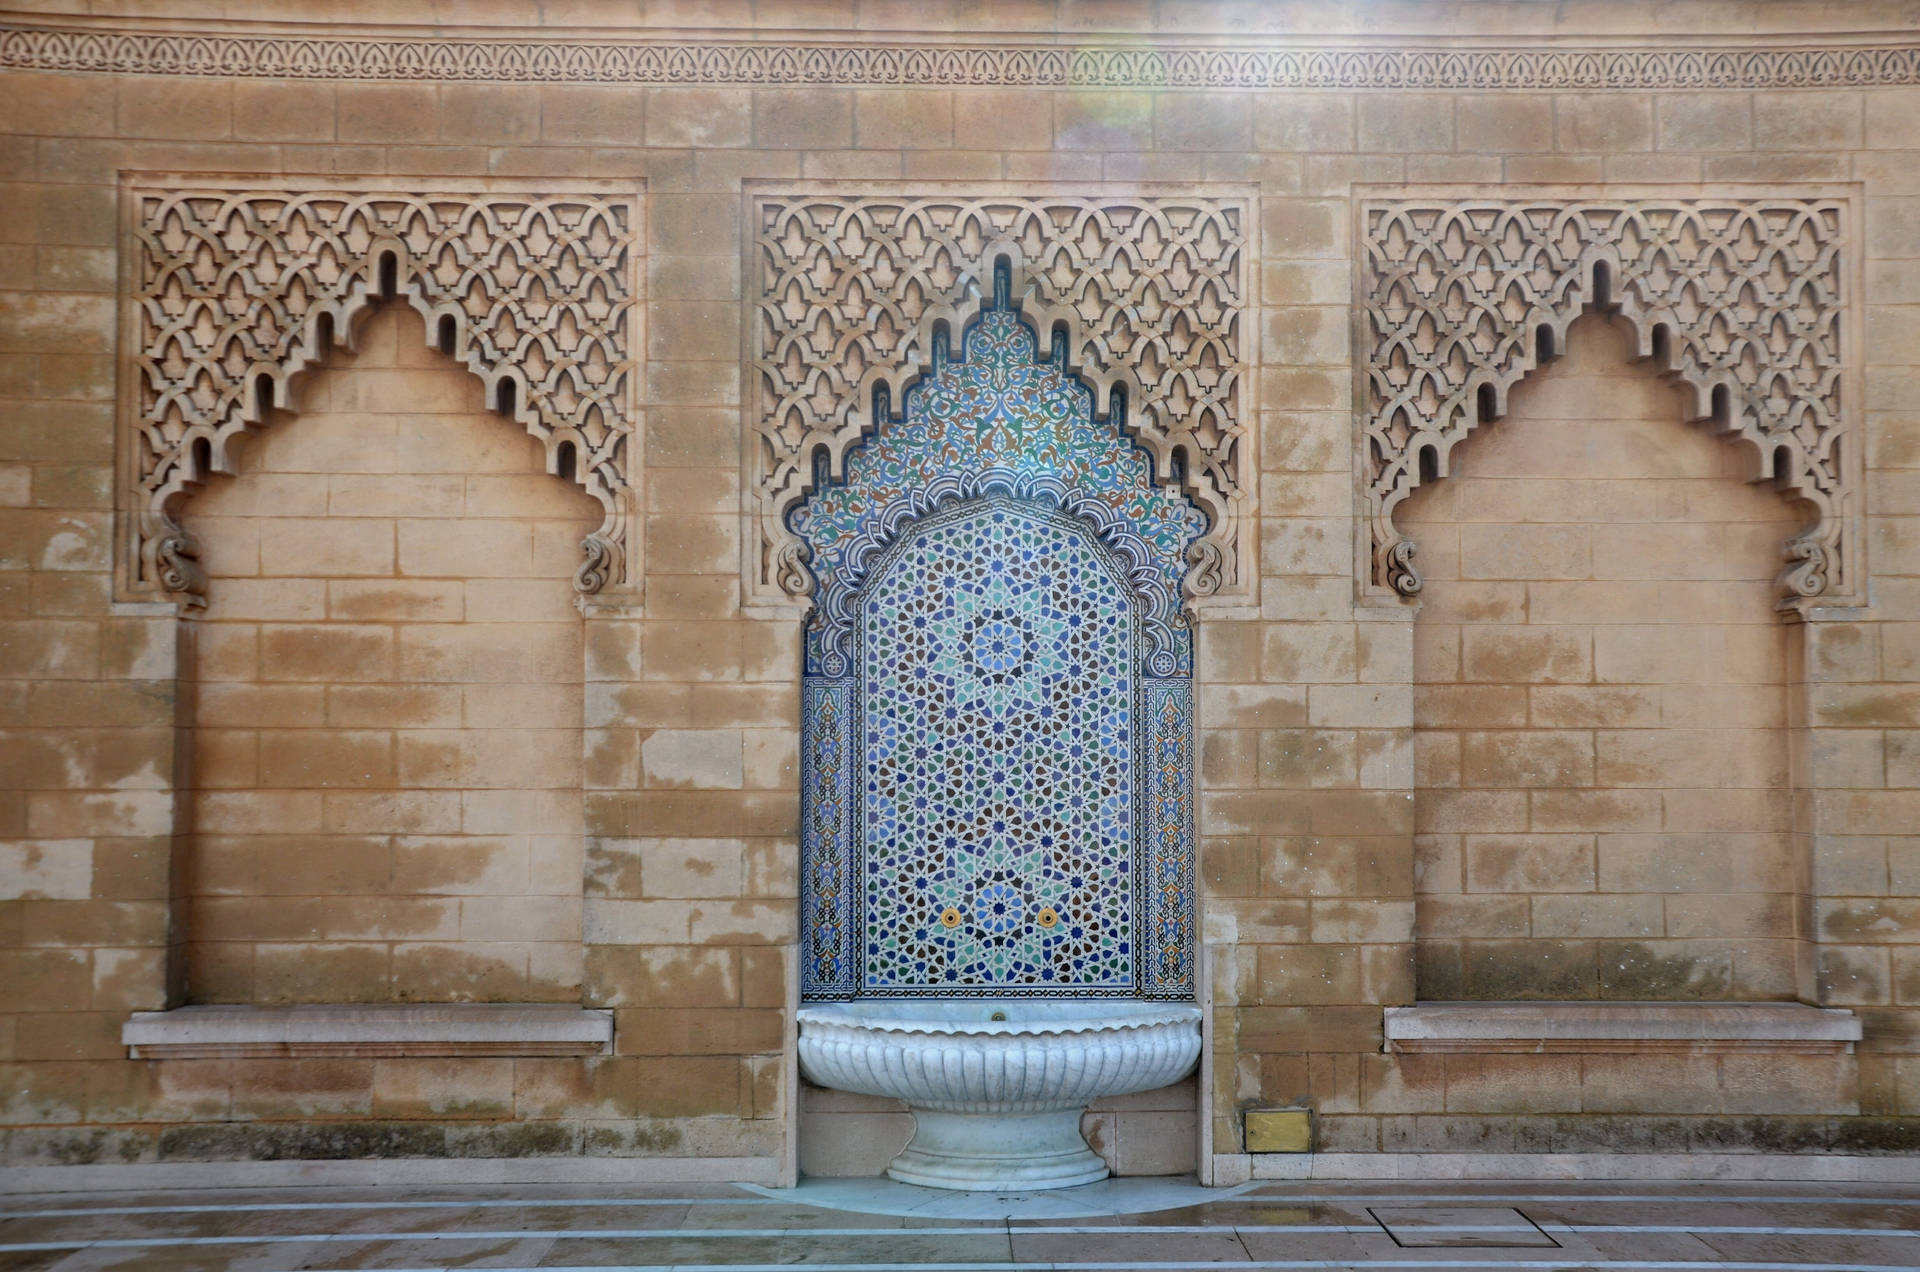 Morocco Islamic Architecture Wallpaper